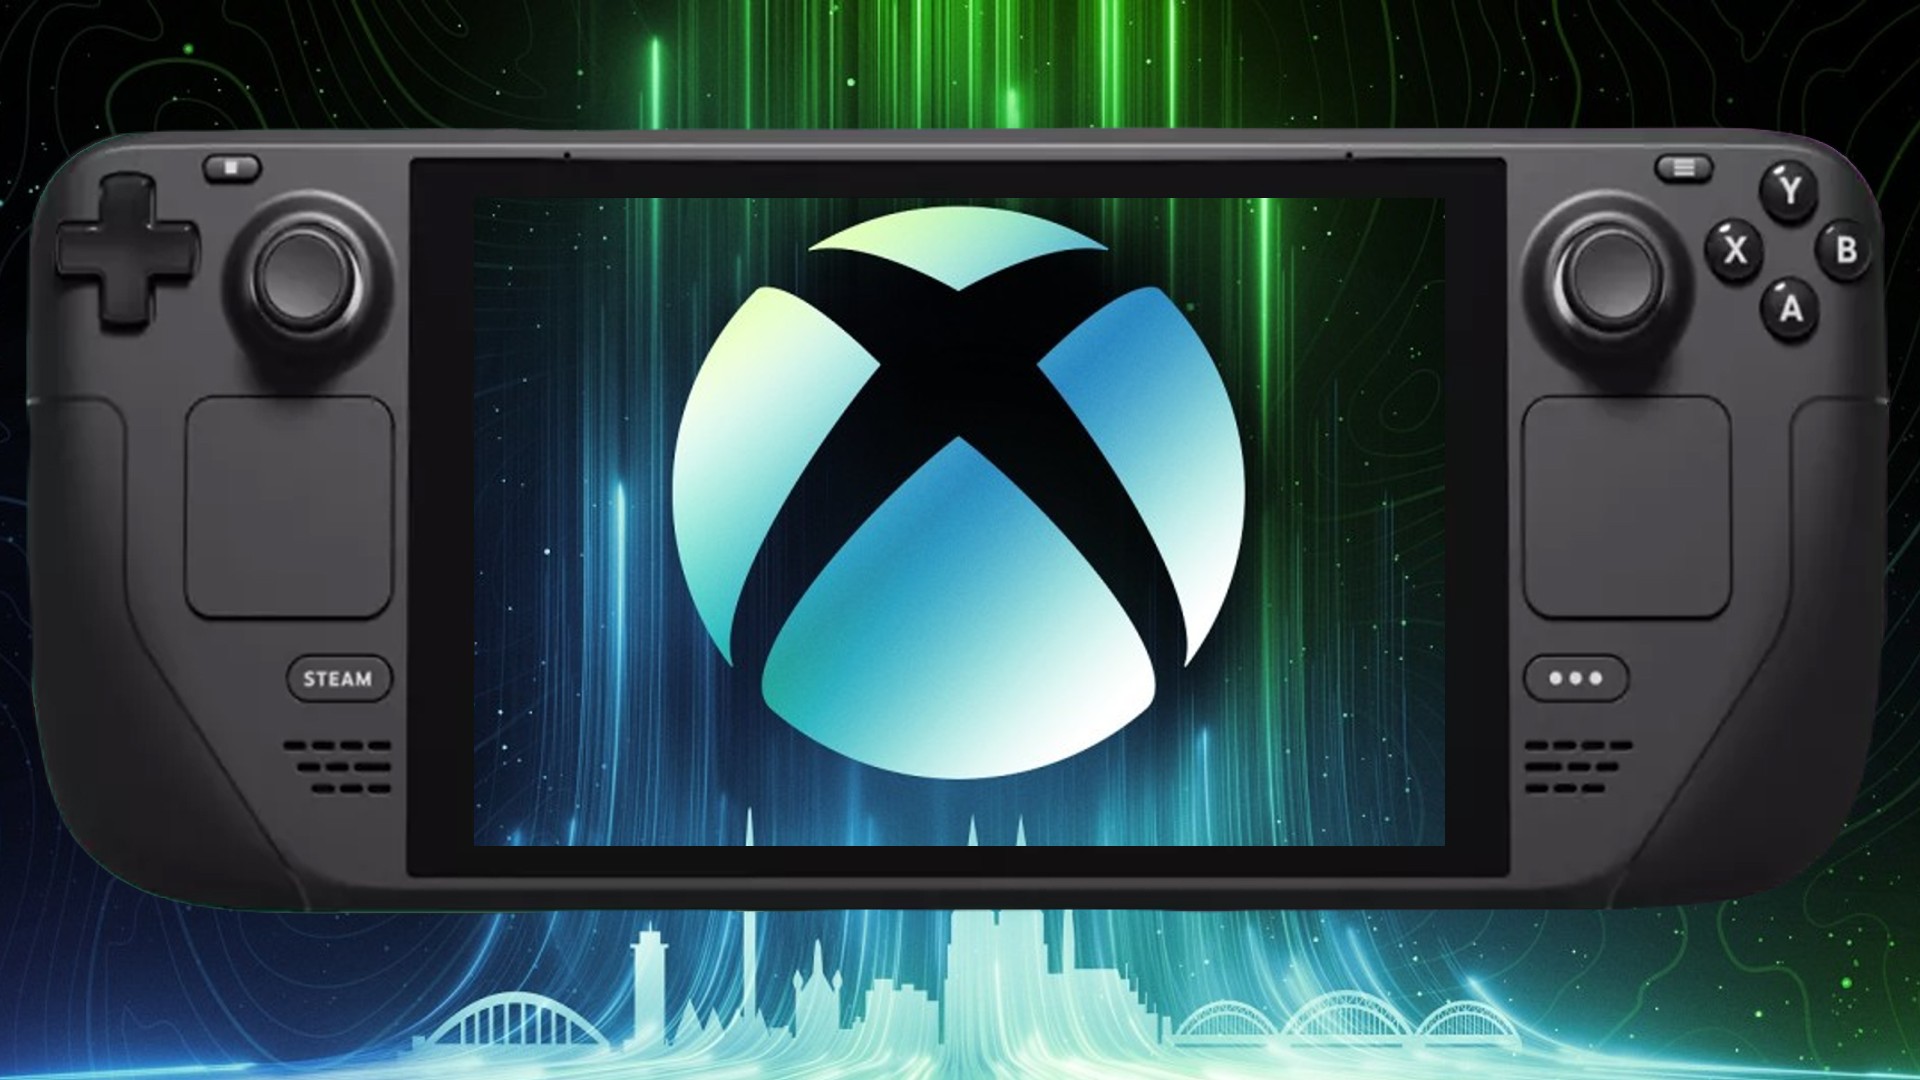 Phil Spencer, avuçiçi oyun bilgisayarı işletim sisteminin “Xbox gibi hissetmesini” istiyor